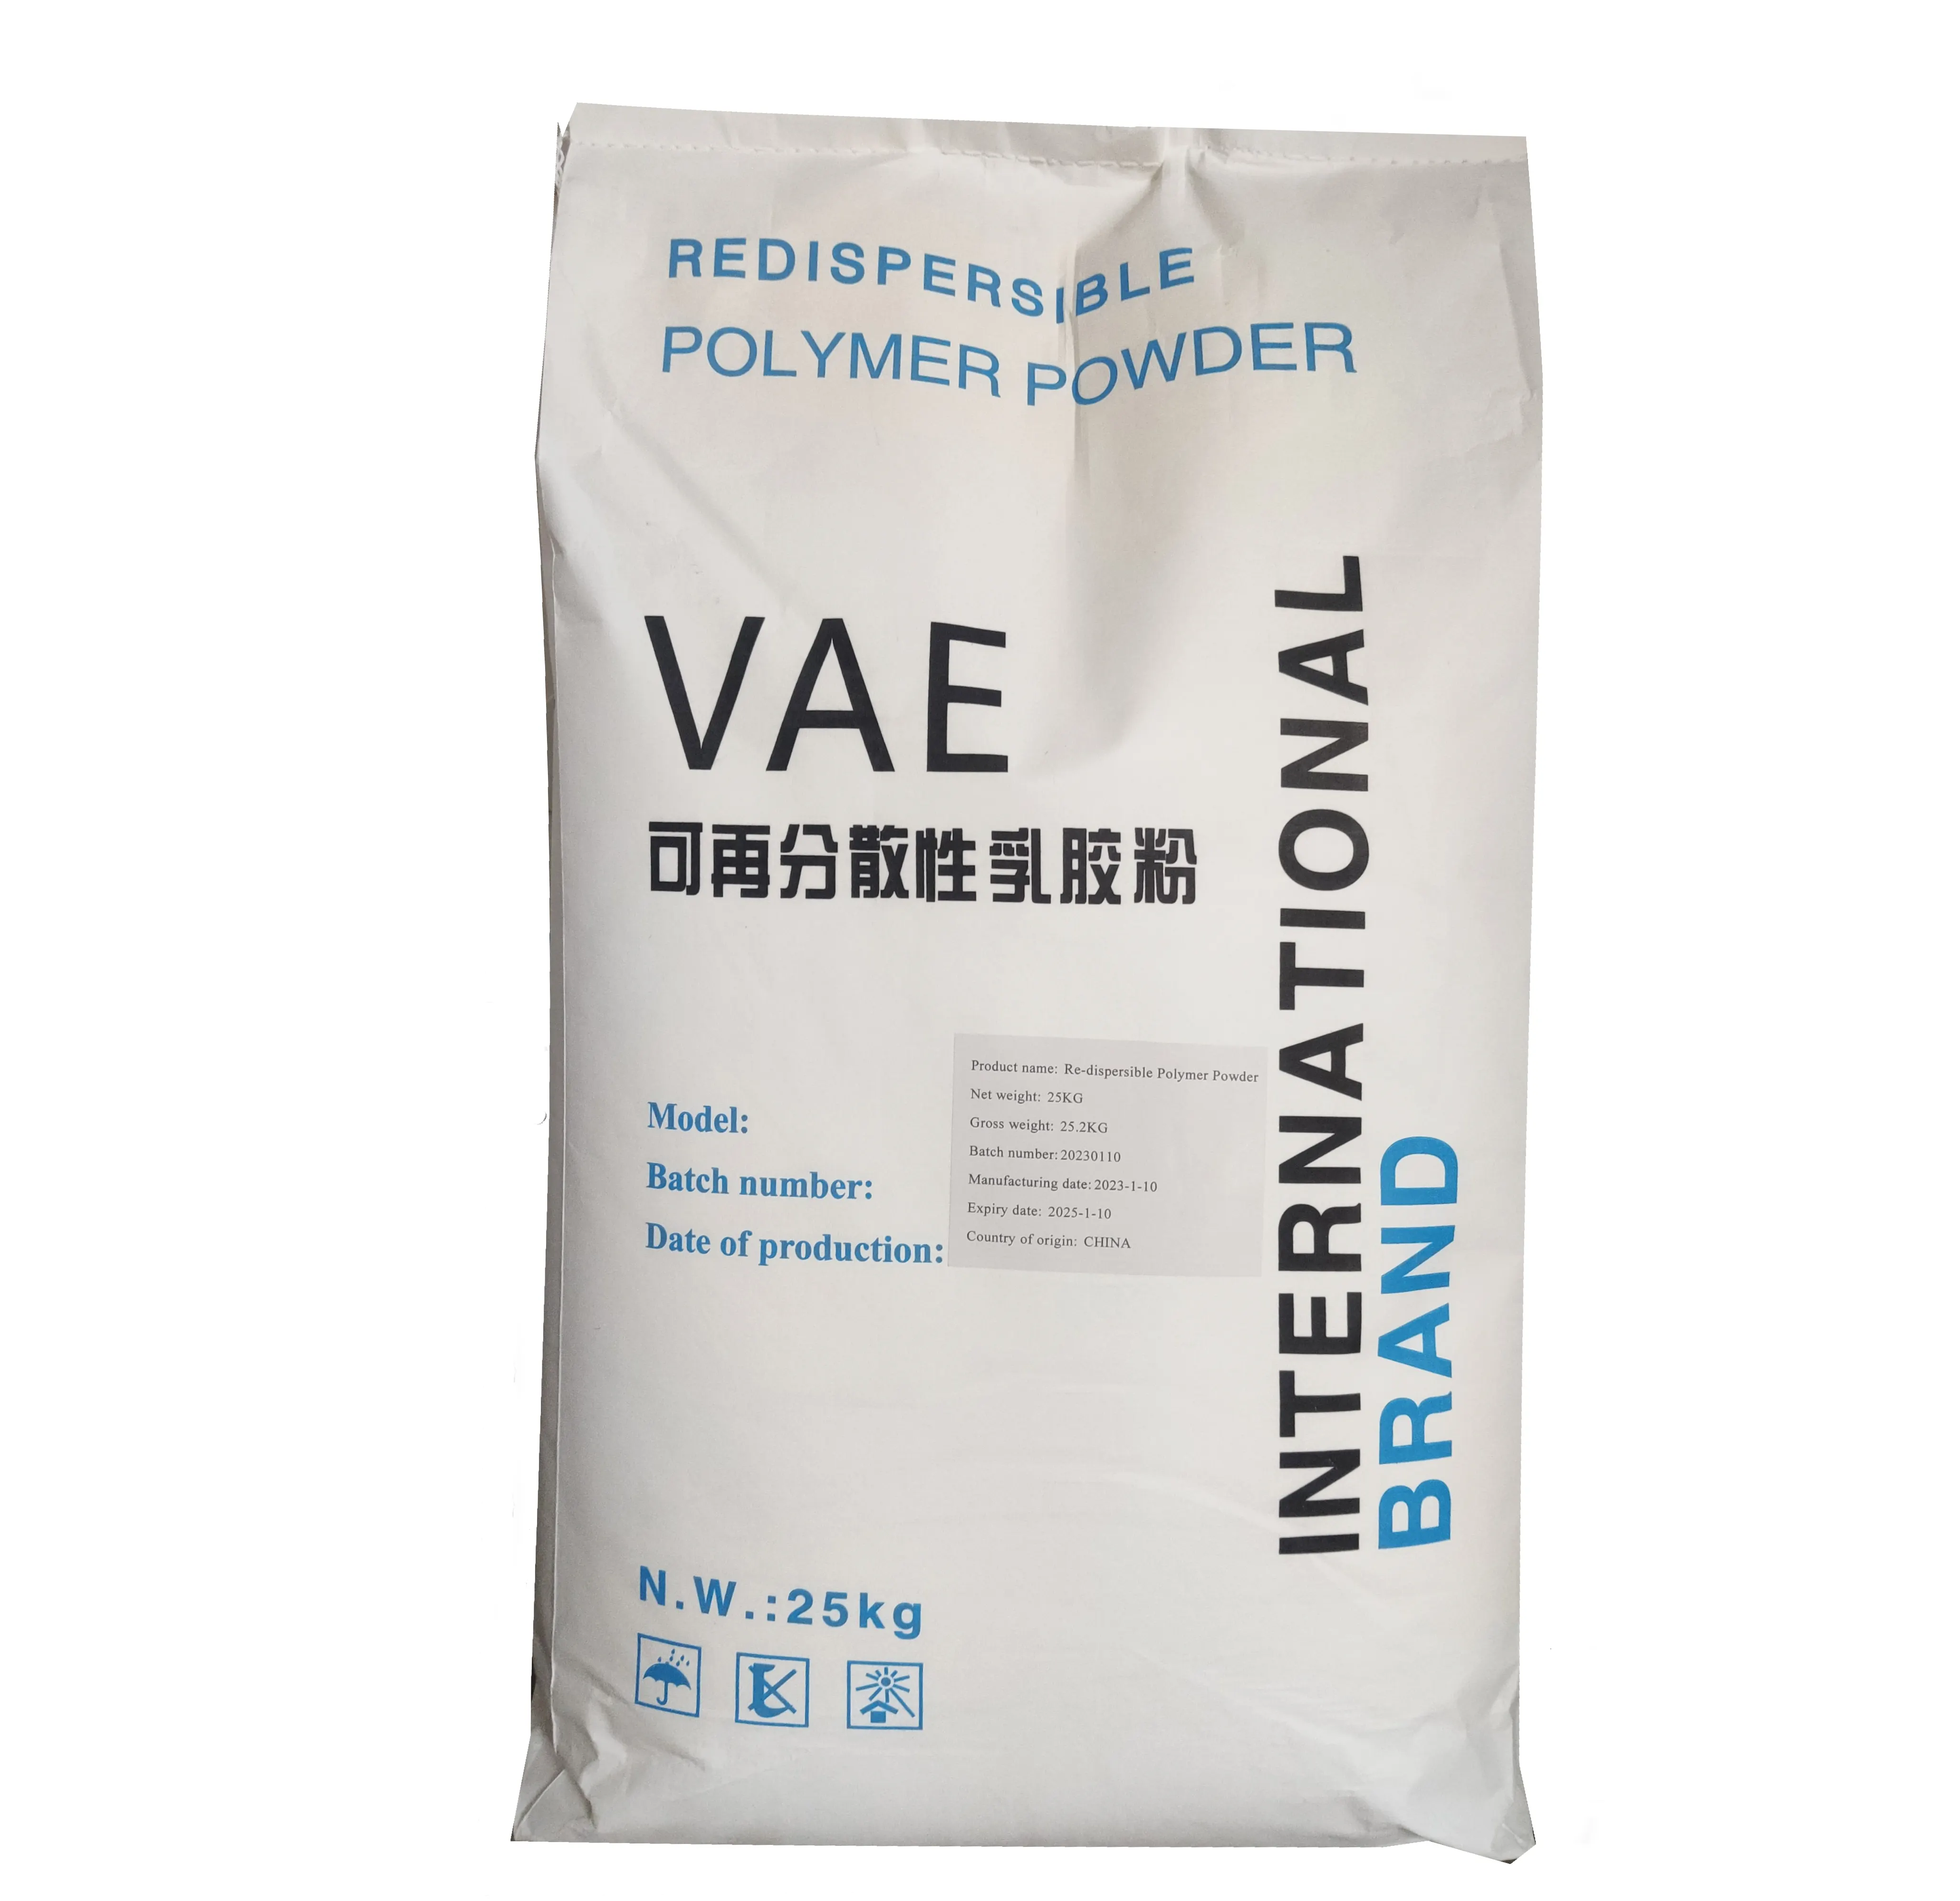 RDP utilizzato in piastrelle di ceramica adesivo da parete stucco anti-crack mortaio rivestimento VAE emulsione redispersibile polvere polimerica